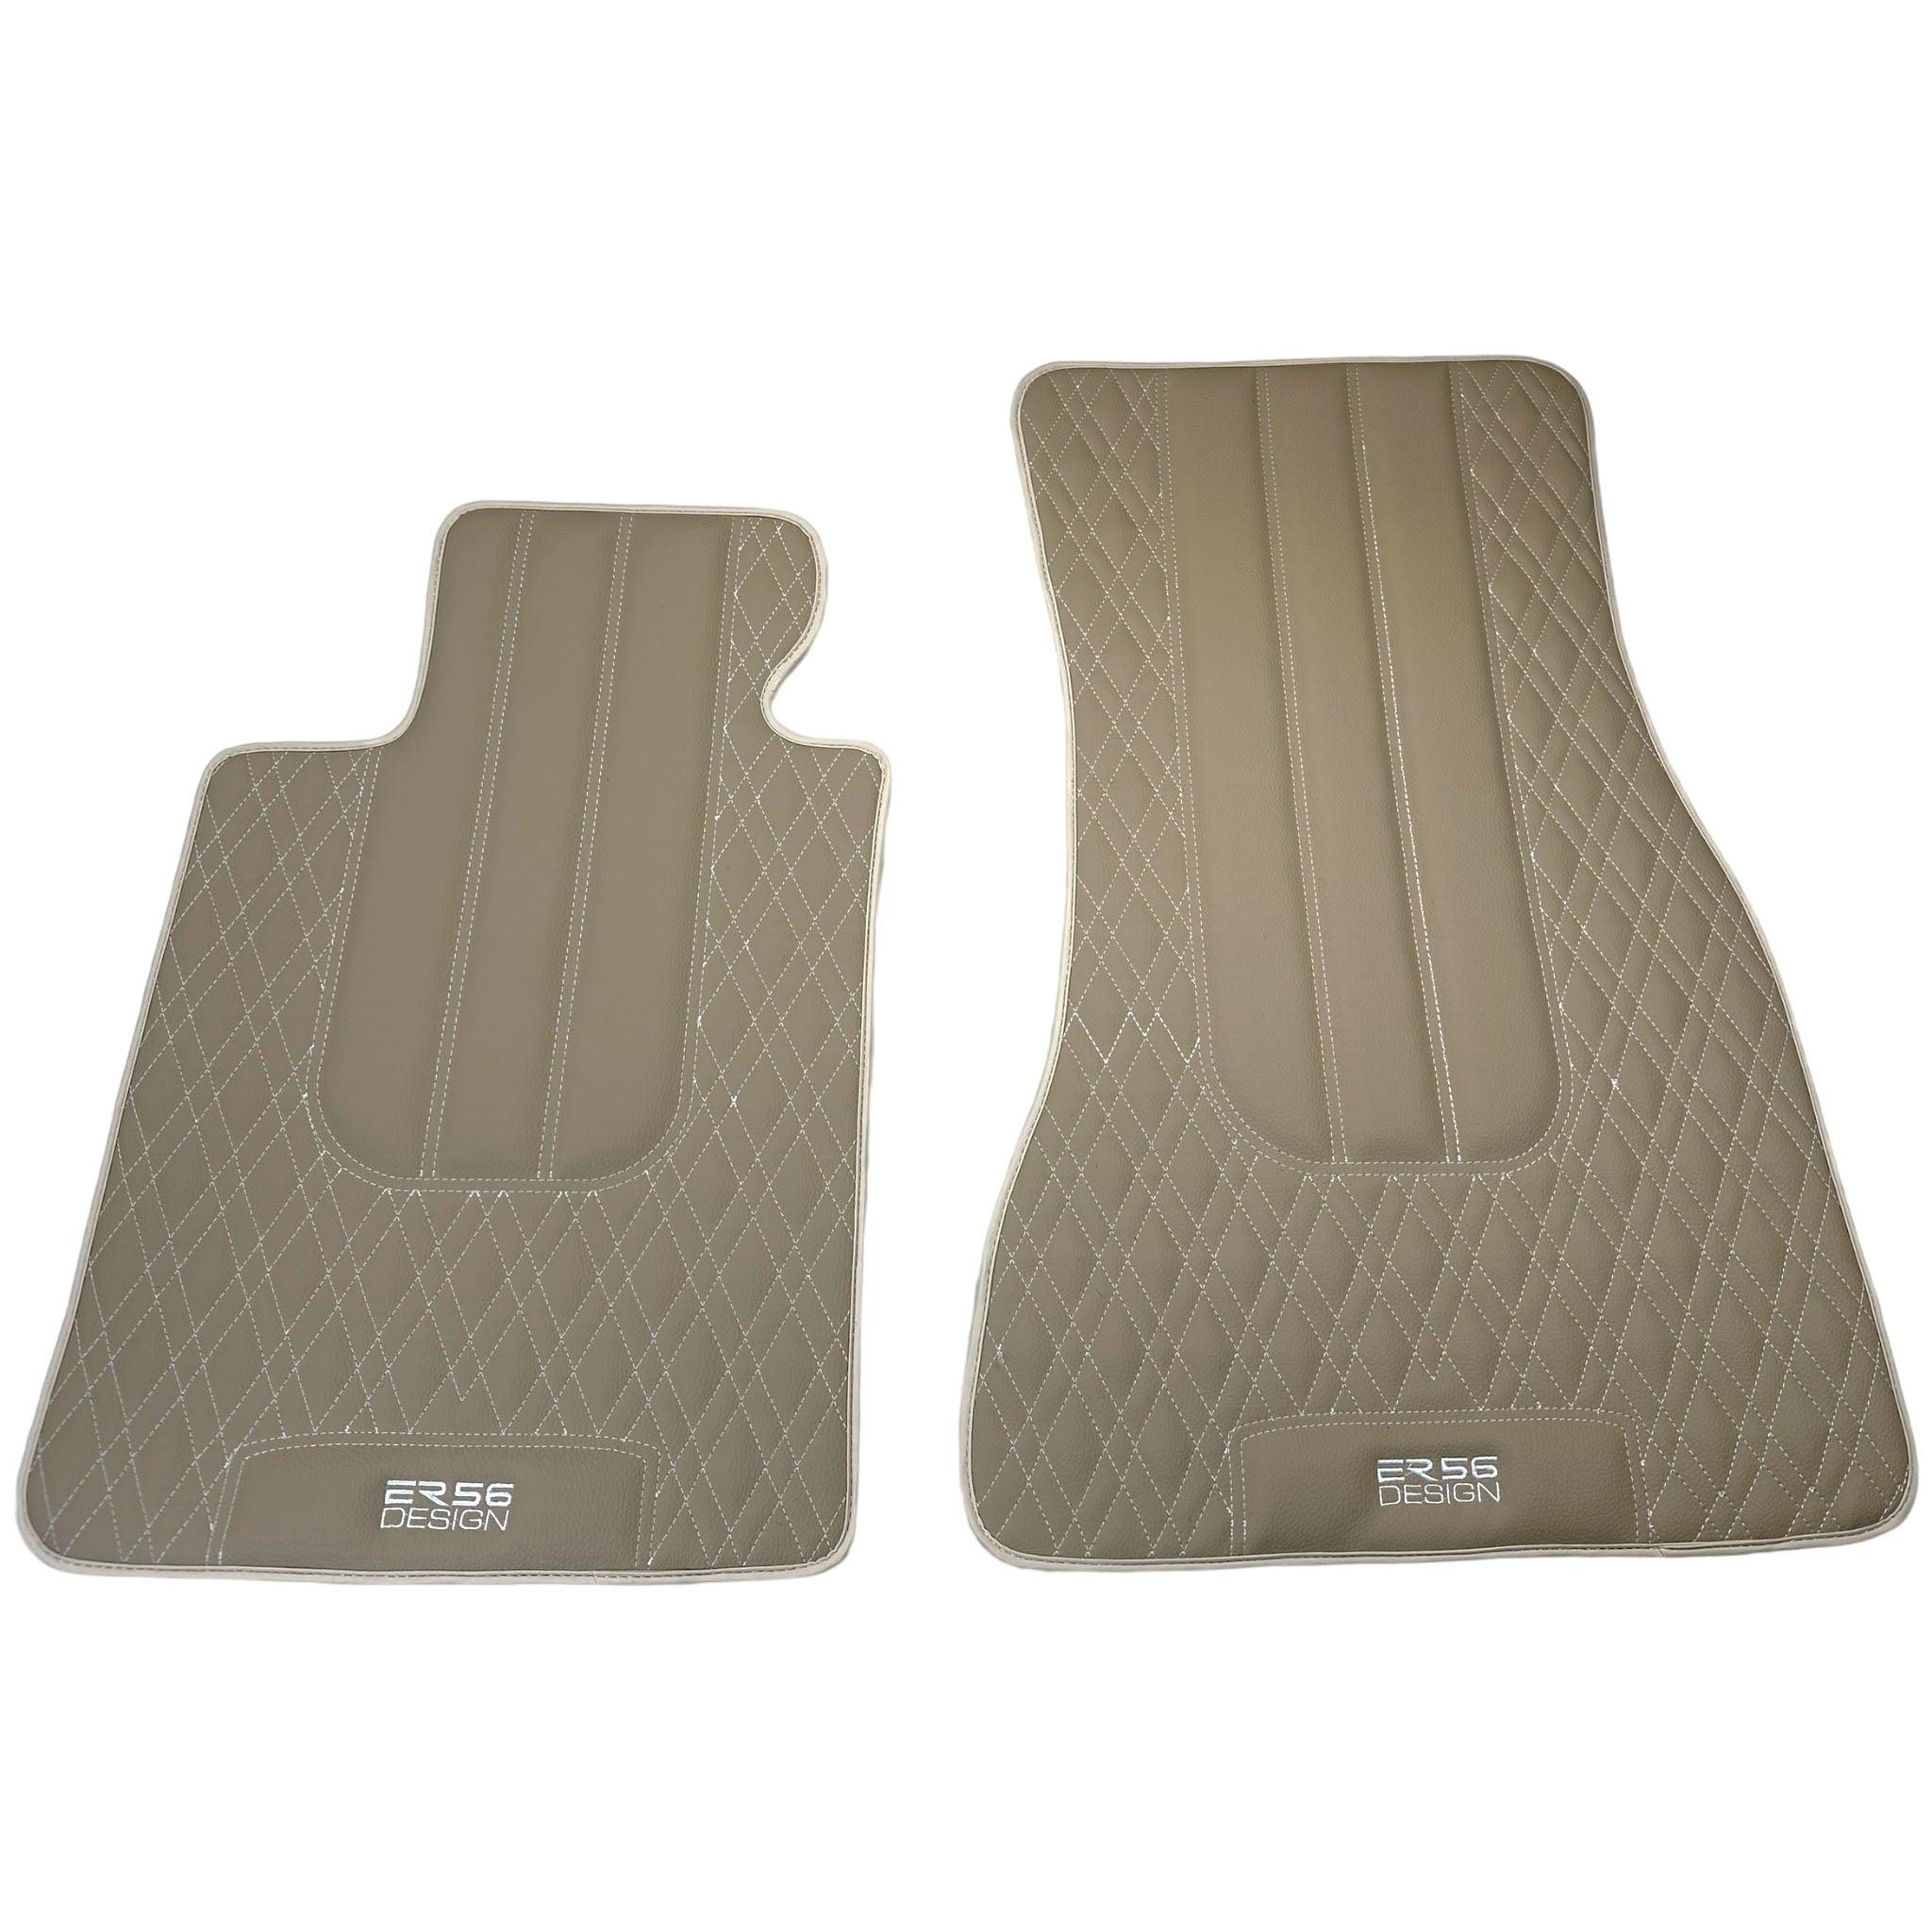 Beige Leather Floor Floor Mats For BMW X5 Series E53